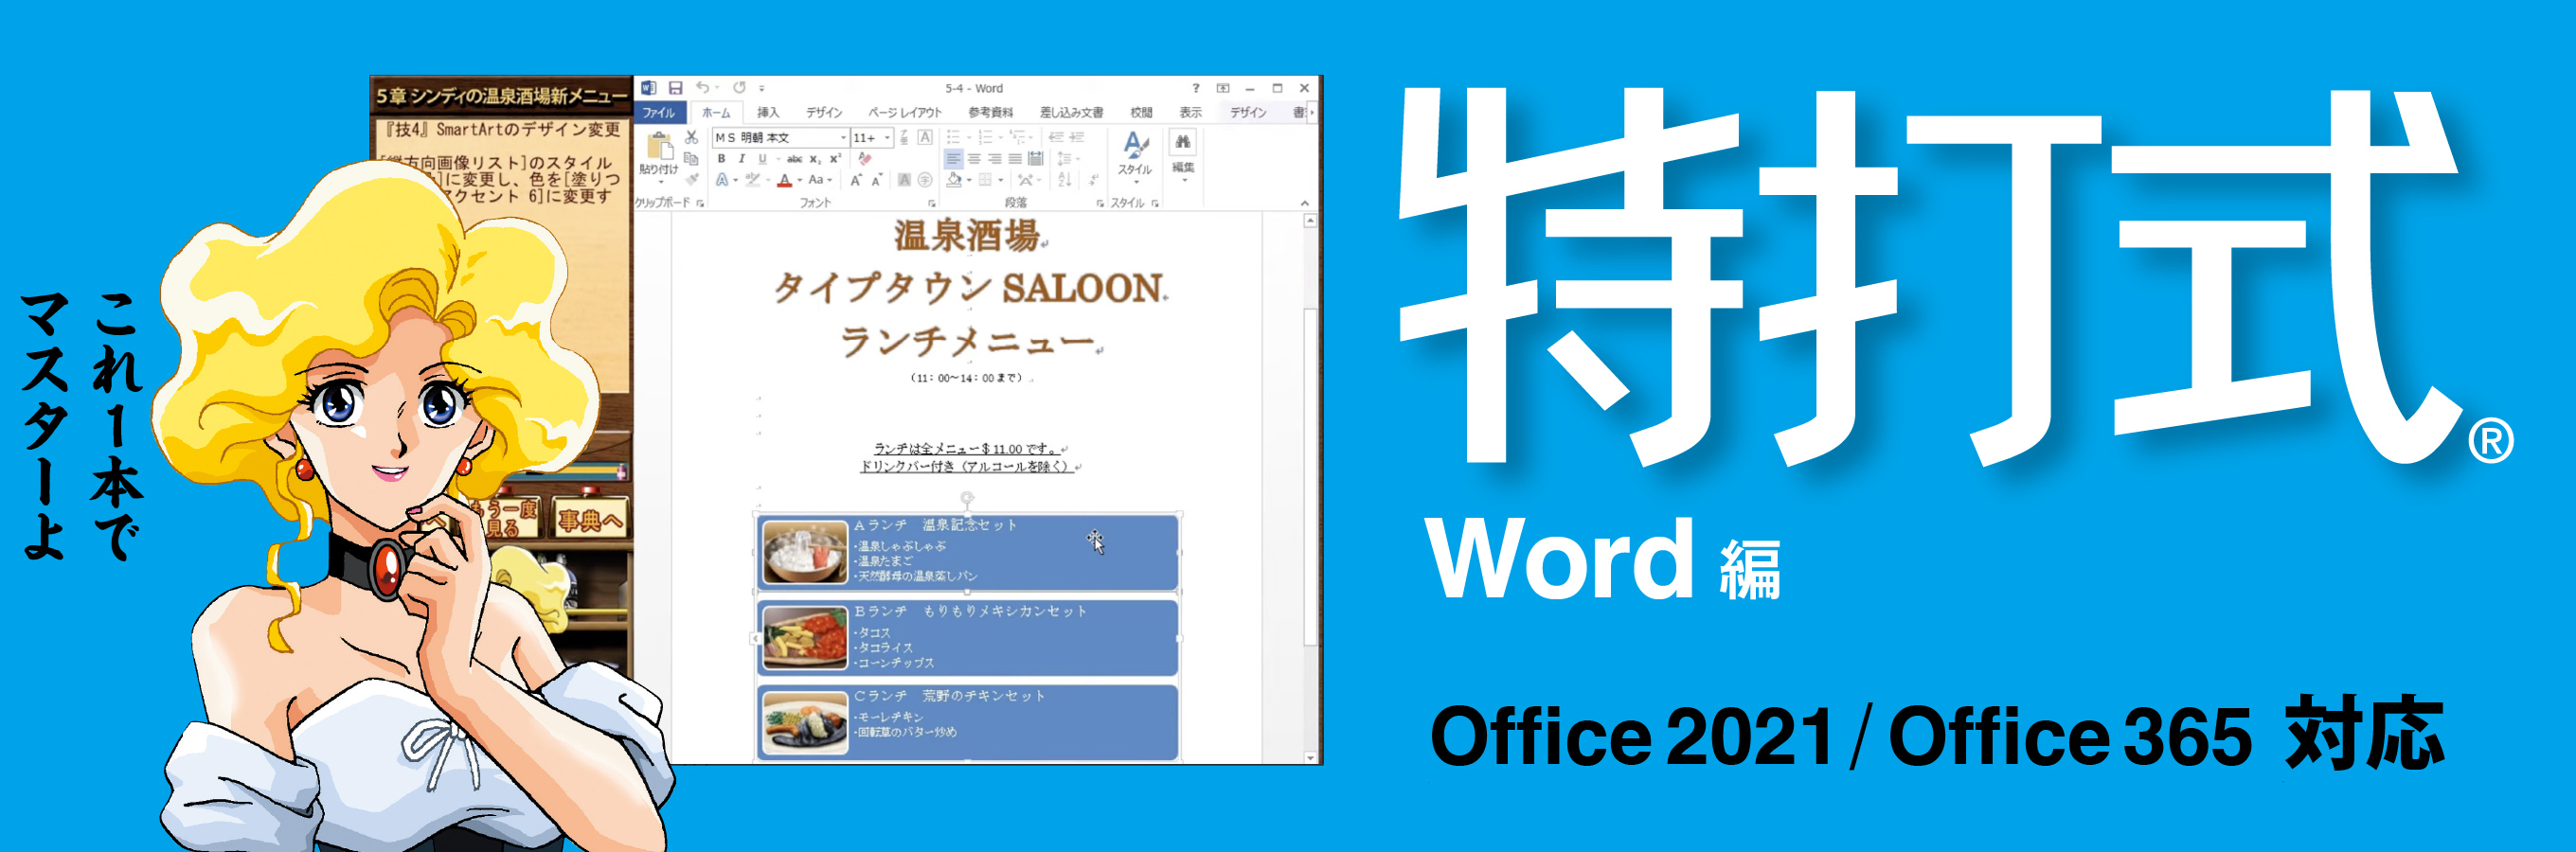 最新版Office 2021対応版「特打式Word」